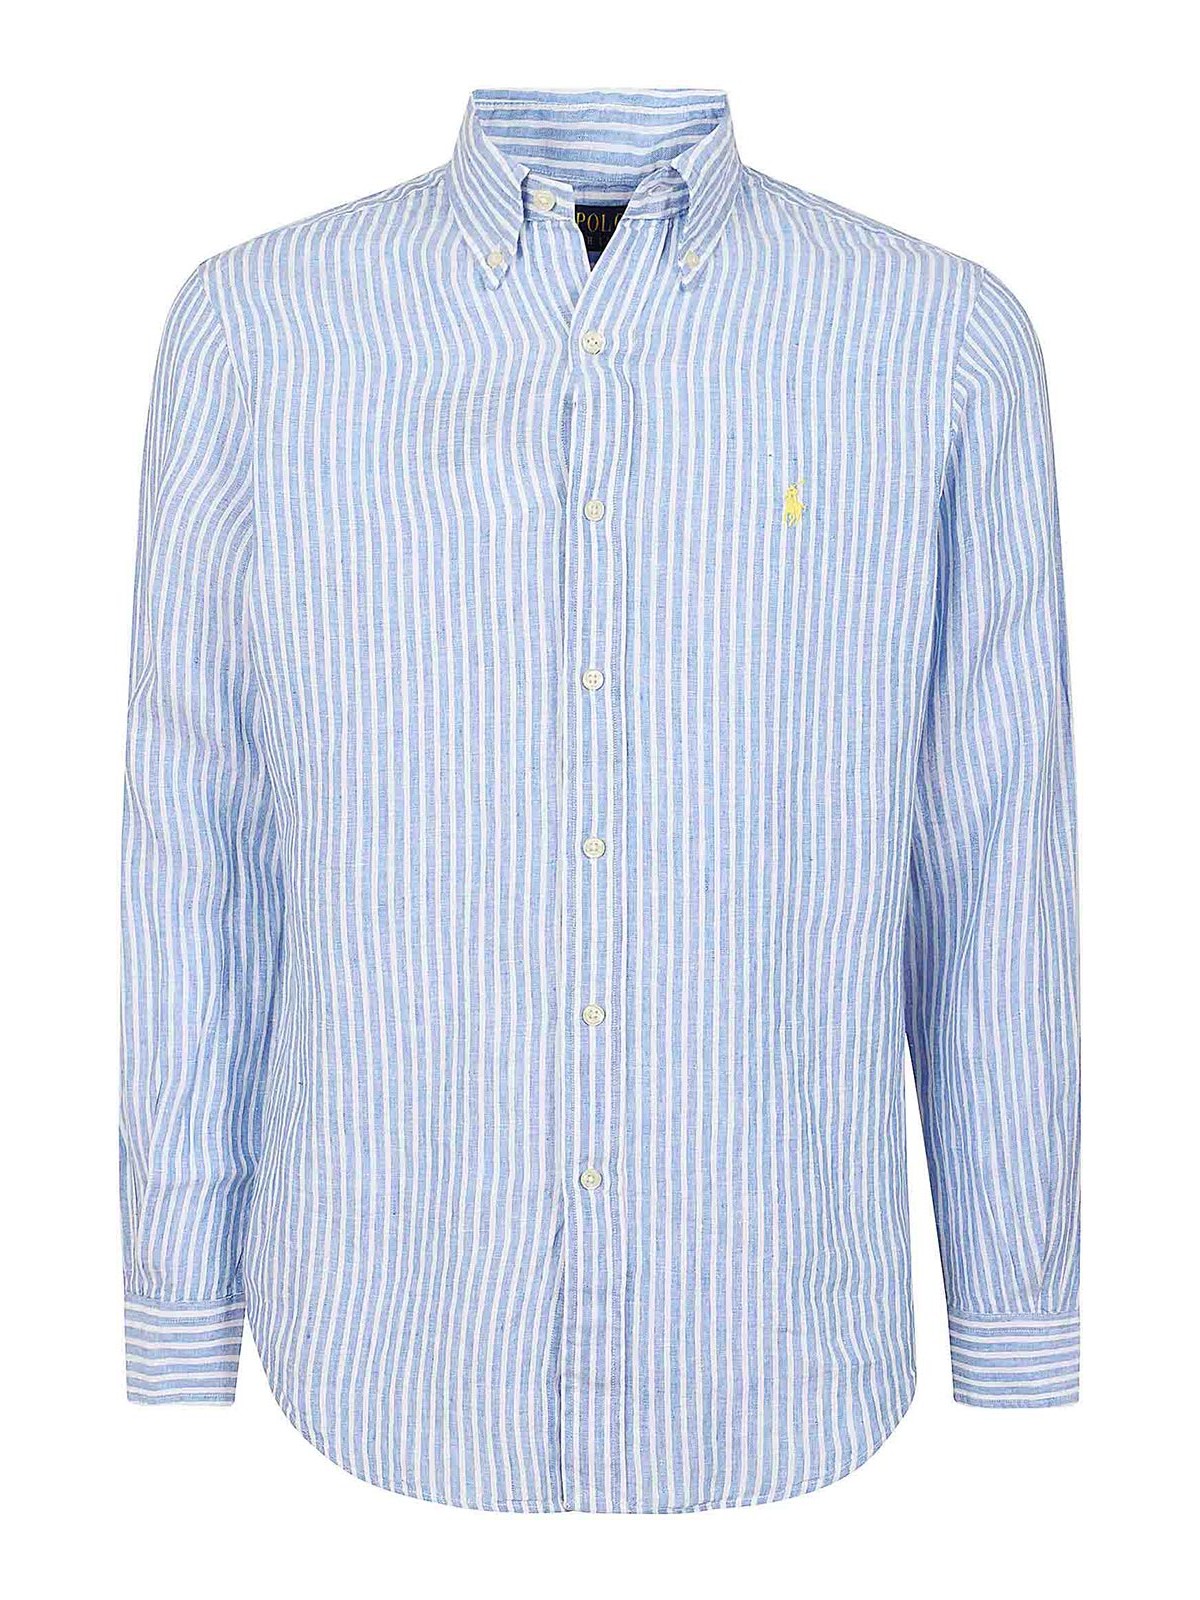 Polo Ralph Lauren Sport Shirt In Light Blue